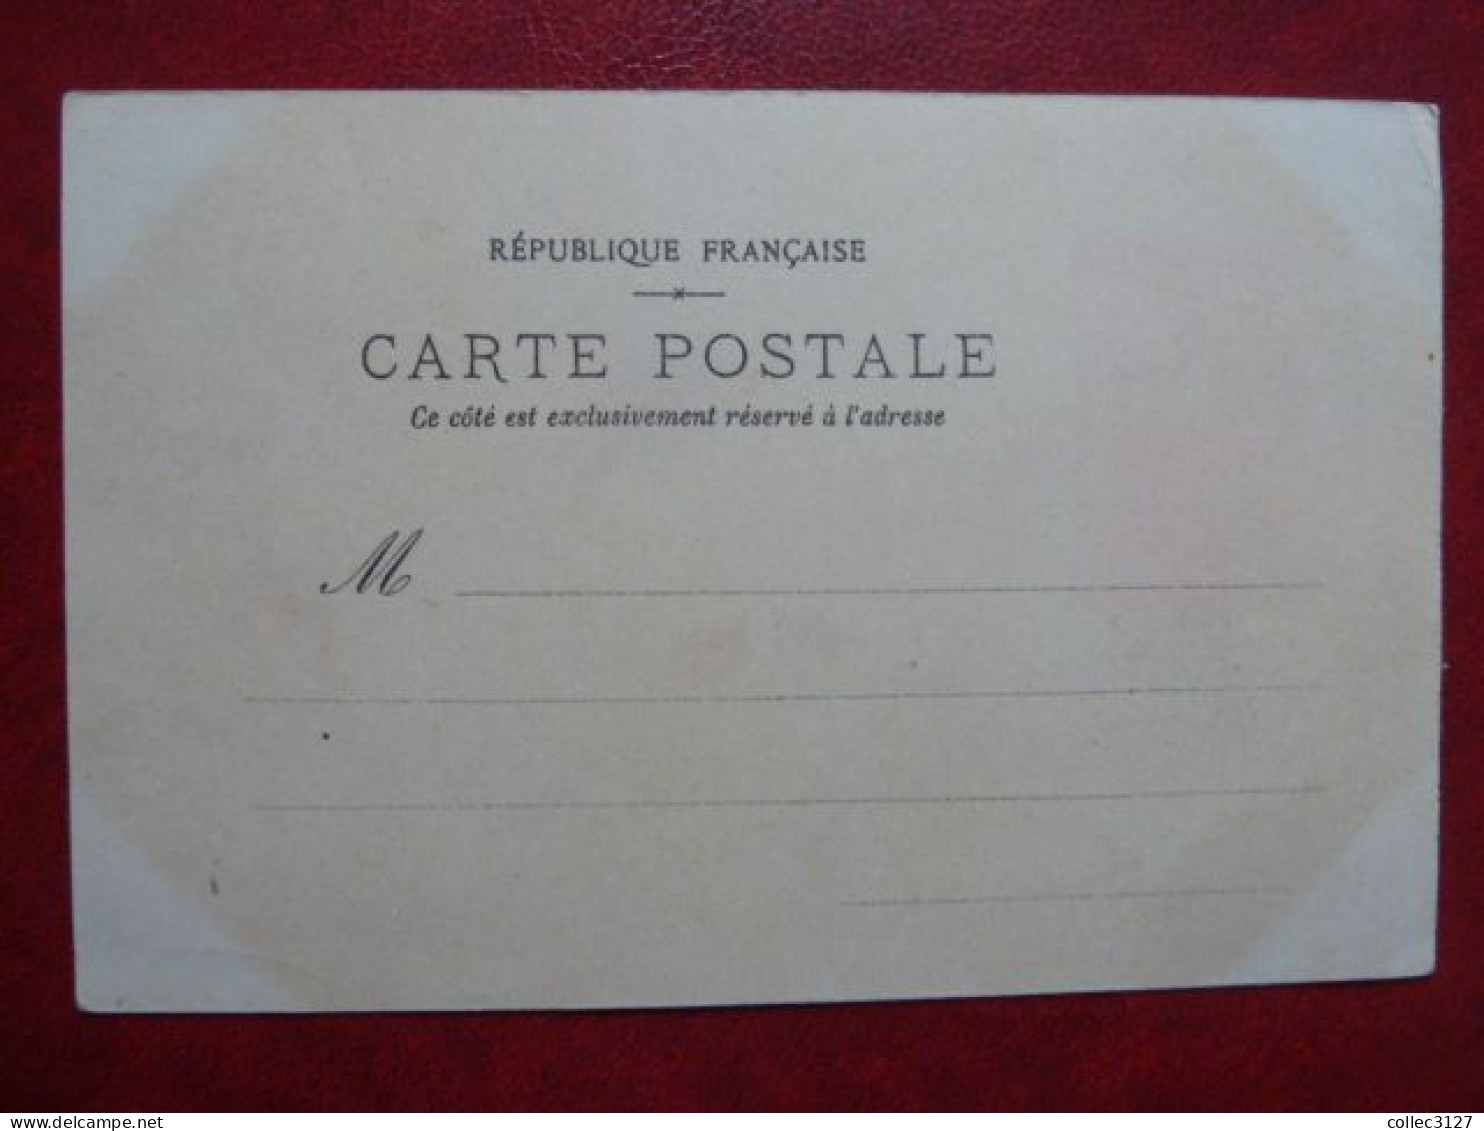 D3 - Exposition Universelle Paris 1900 Philatélie Timbres Postes Non Circulé Espagne Belgique Afrique Du Sud Italie - 1900 – Paris (France)